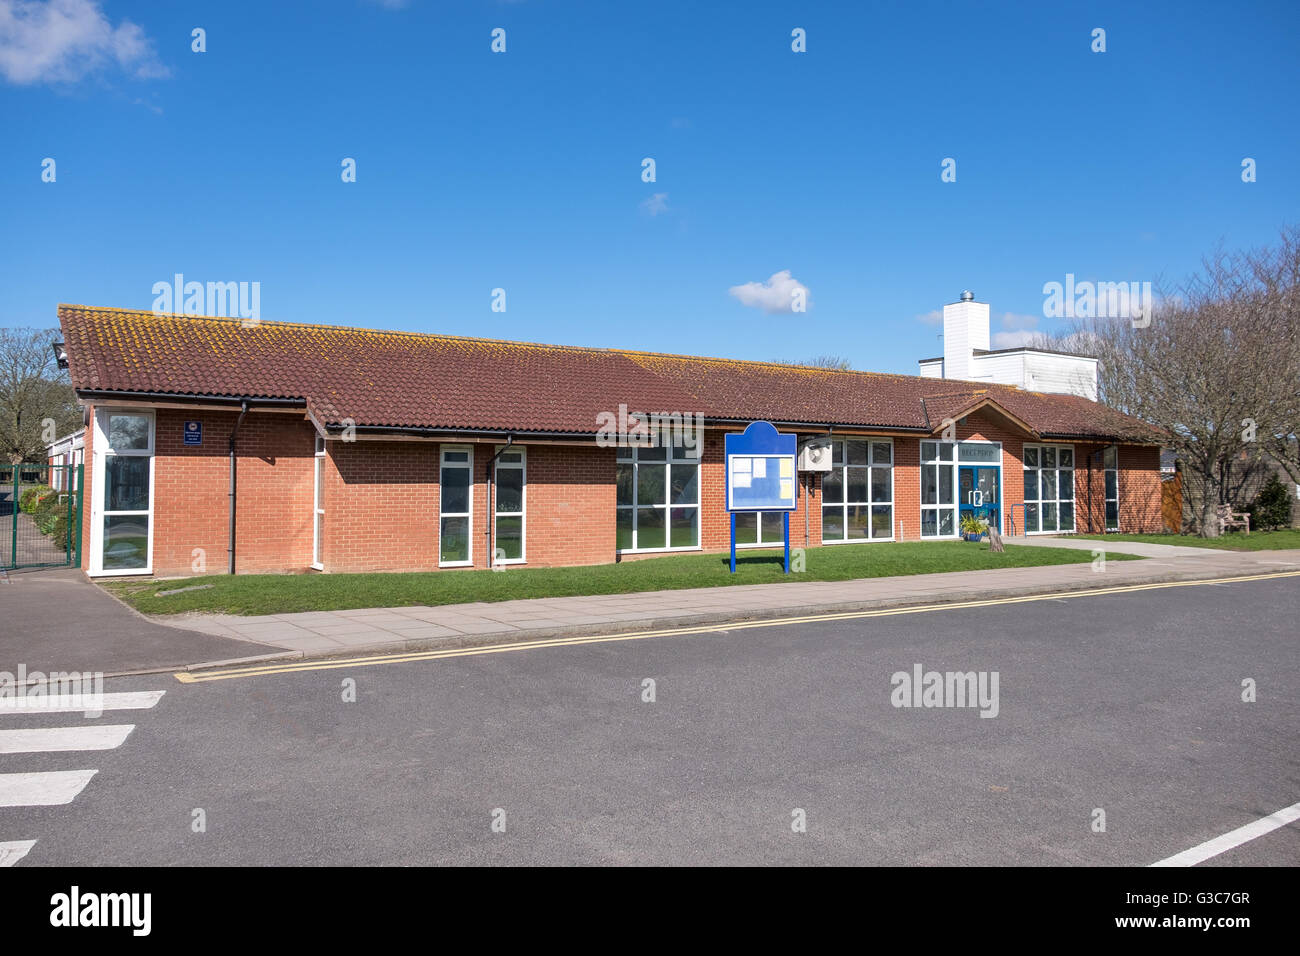 Bâtiment de l'école au Royaume-Uni, ce type d'école est pour les enfants/jeunes enfants de 5-11ans Banque D'Images